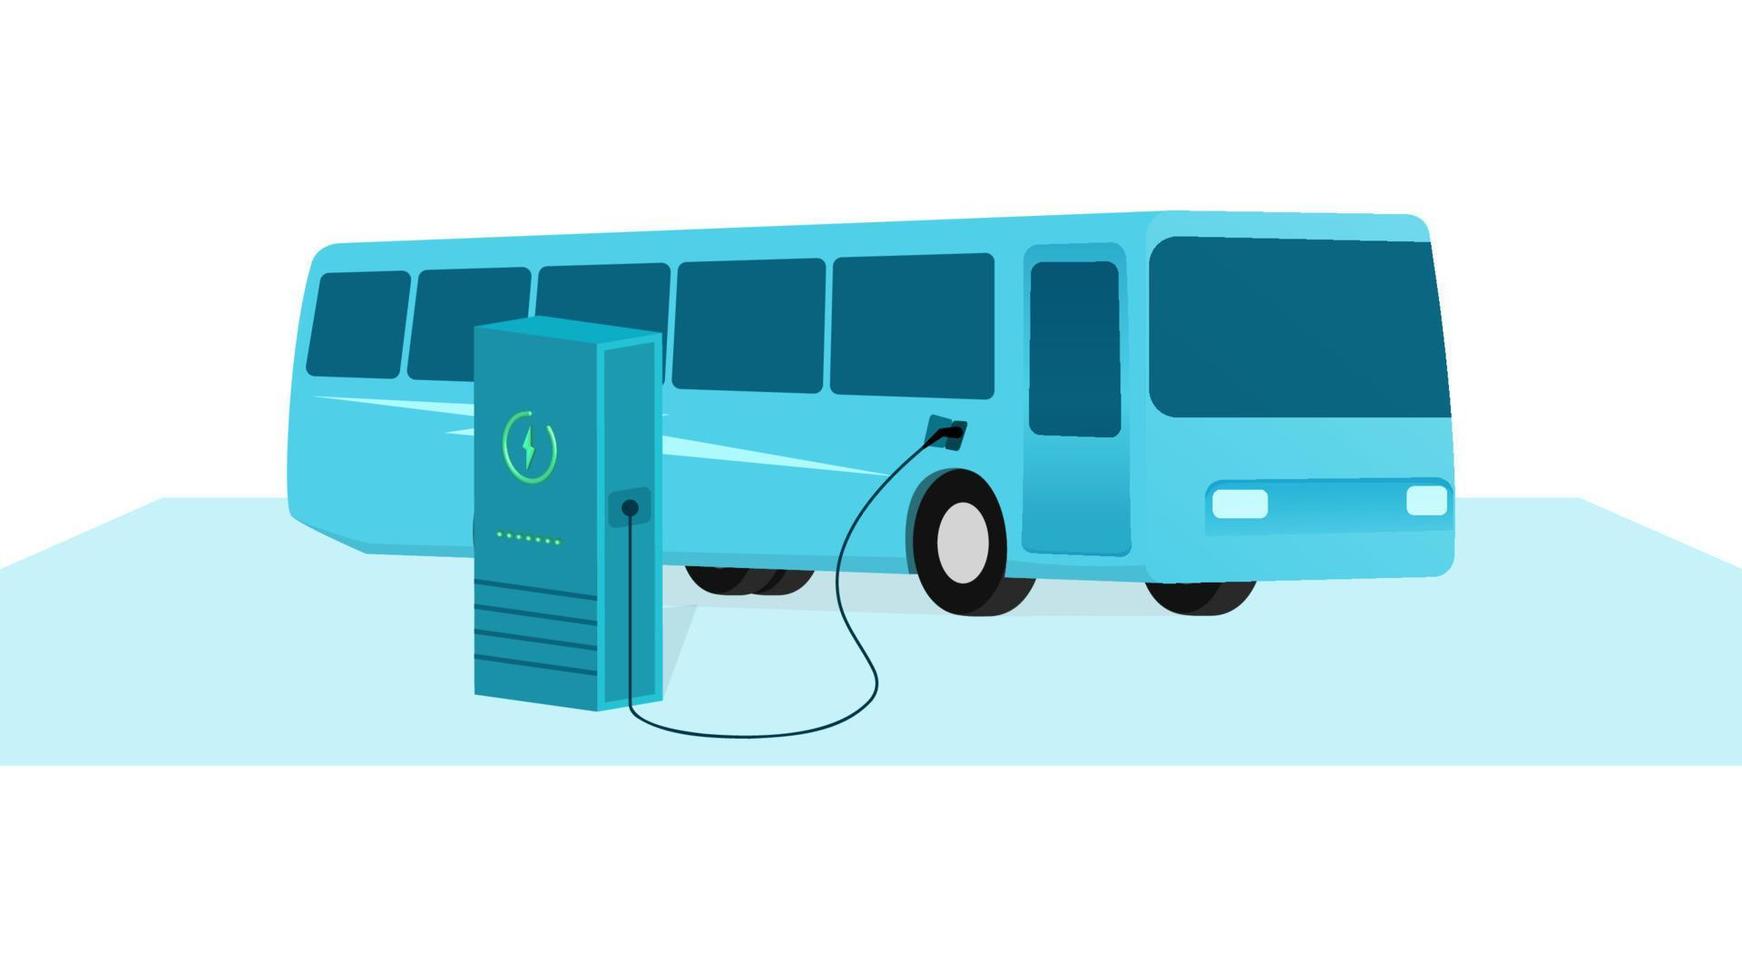 autobus di trasporto pubblico che si ricarica alla stazione di ricarica per veicoli elettrici, veicolo al punto di ricarica ev, illustrazione vettoriale aziendale su sfondo bianco.